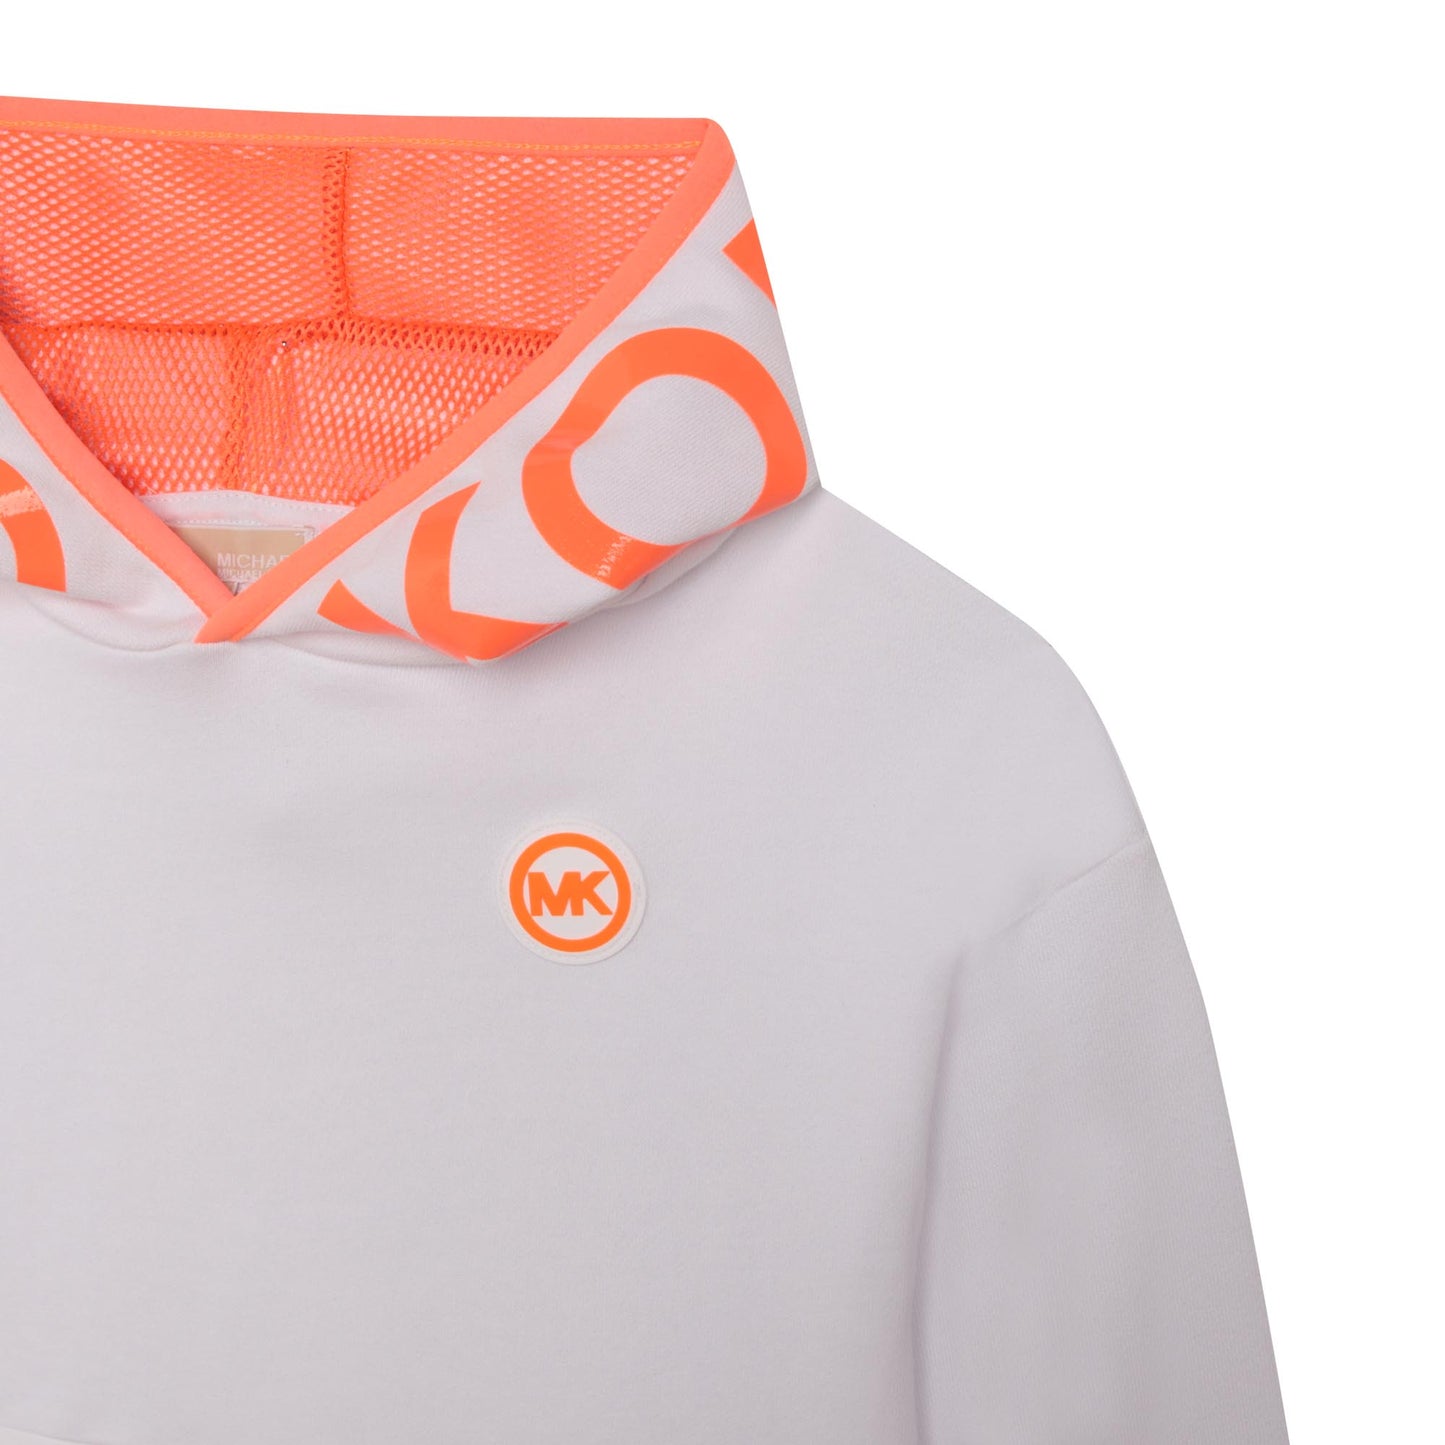 Michael Kors White/Peach Sweatshirt